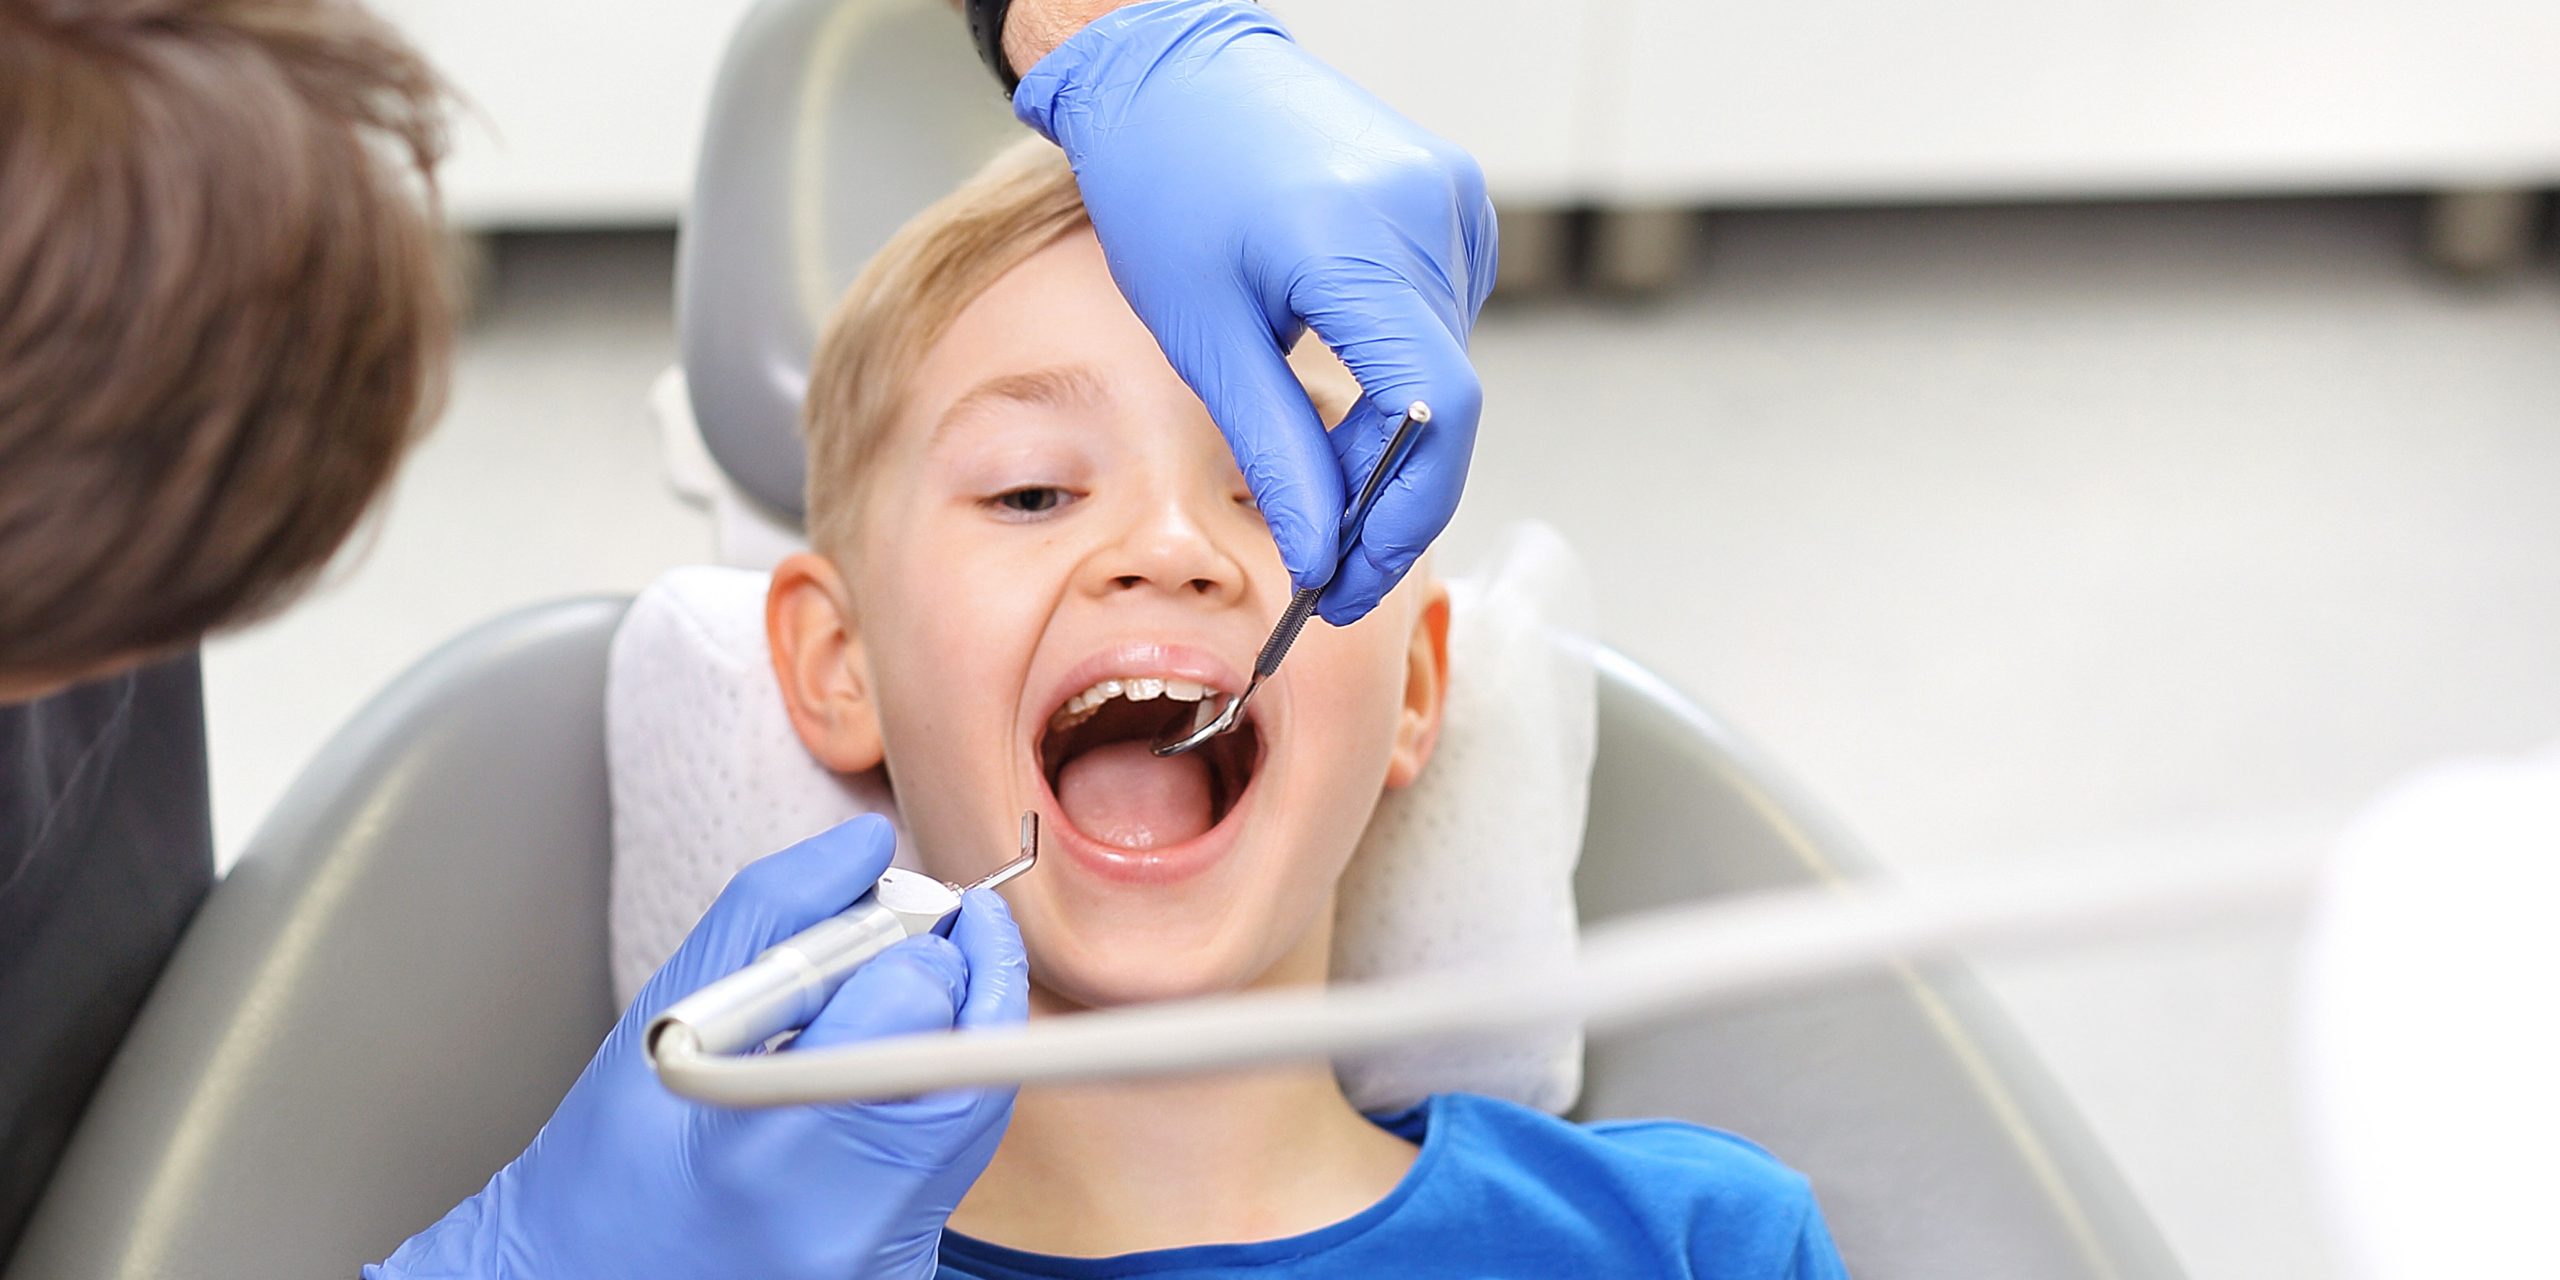 Hilo dental: ¿cómo usarlo correctamente? - Clínica Kranion